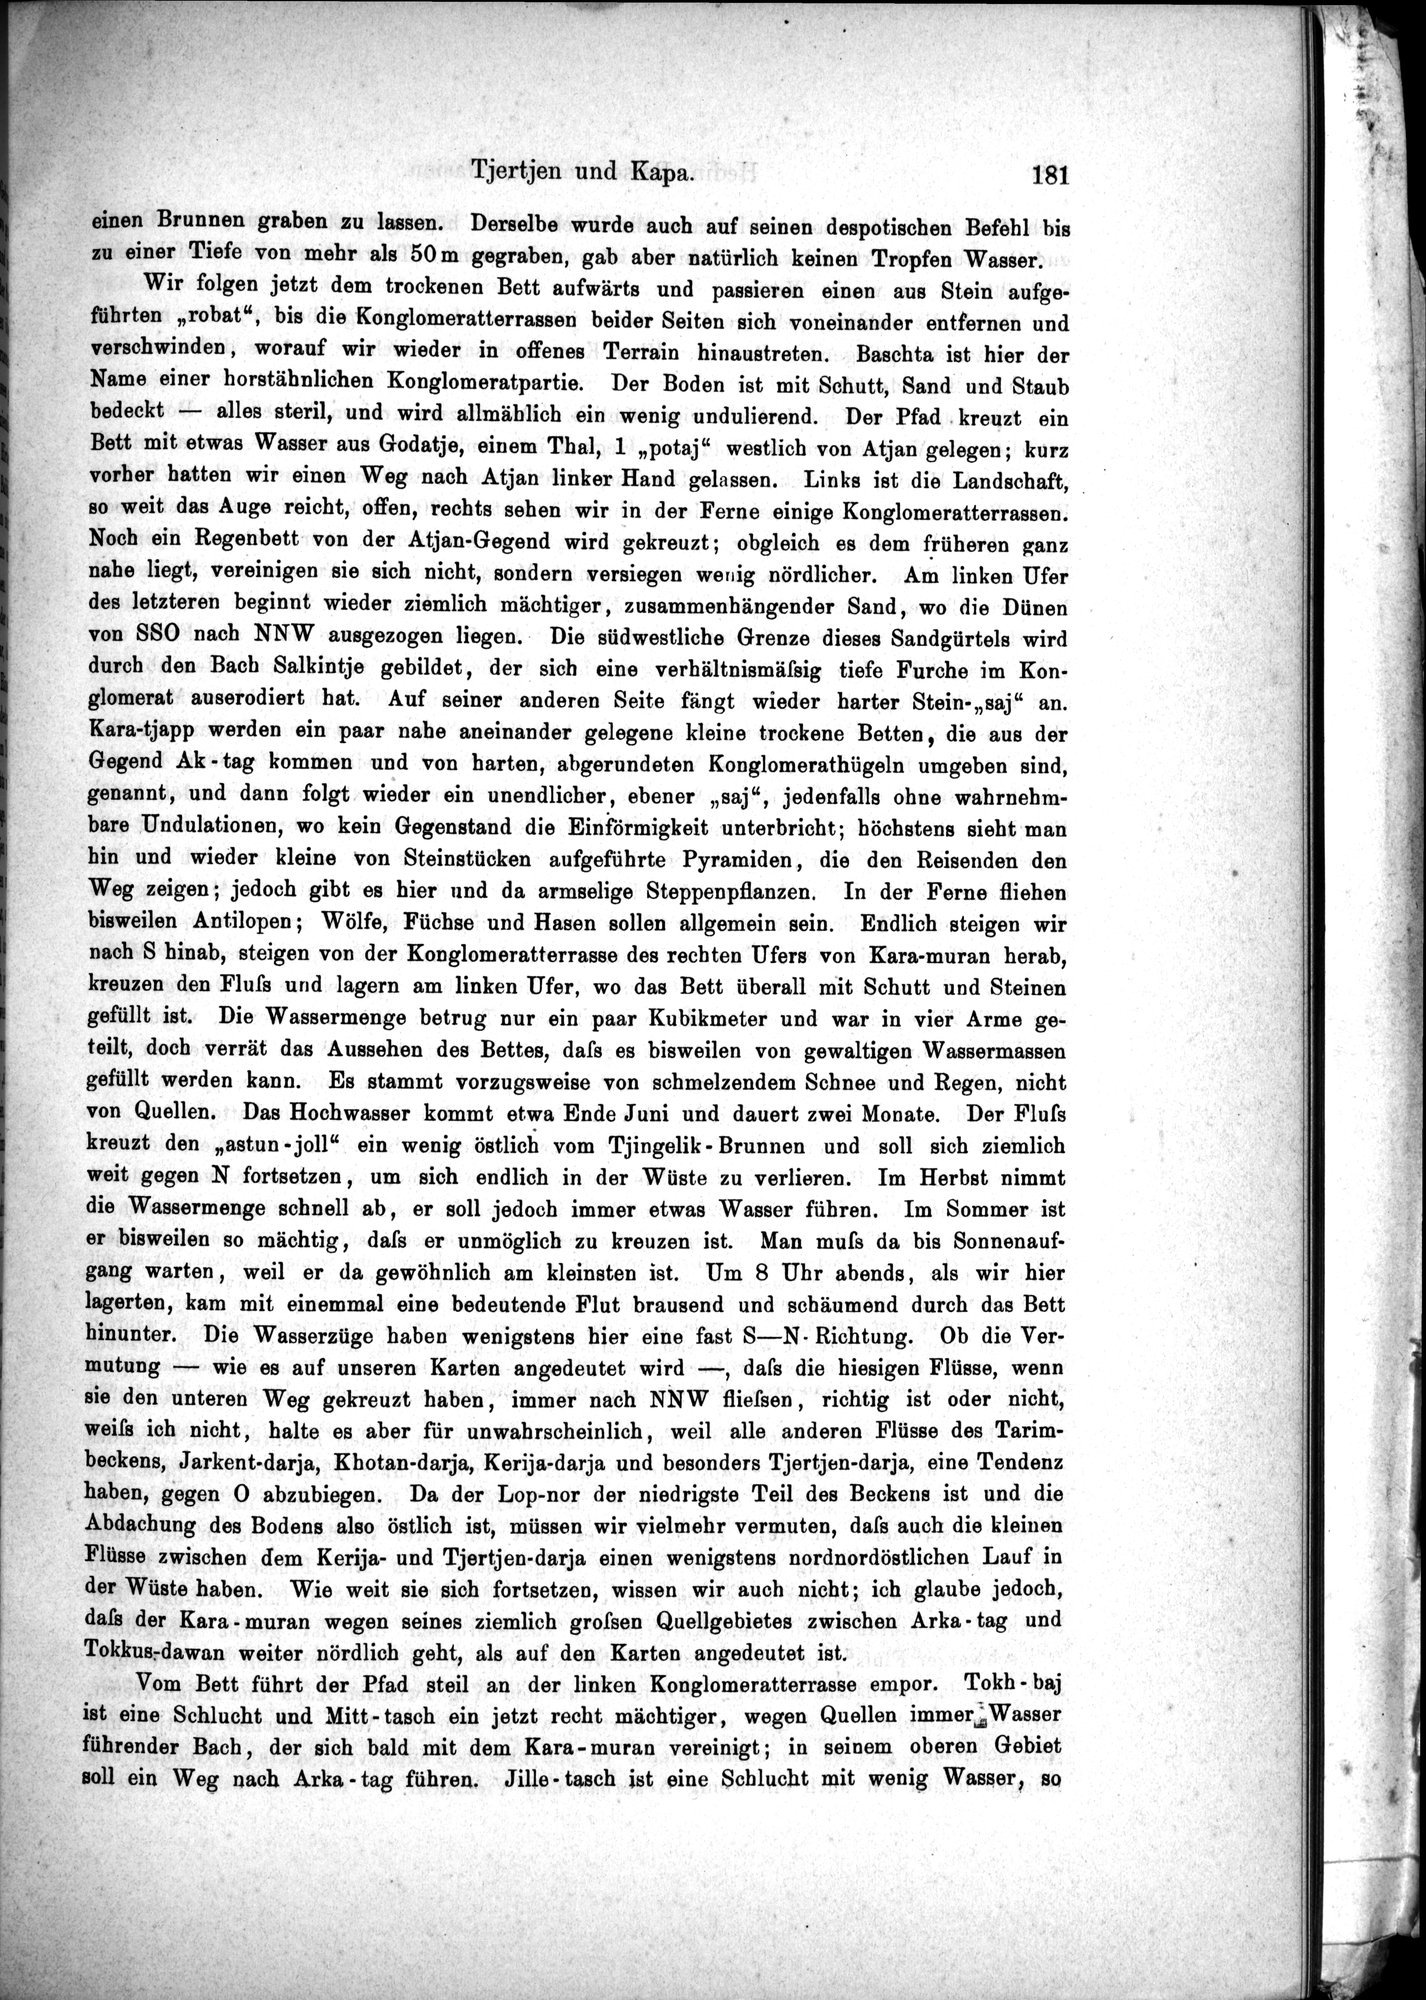 Die Geographische-Wissenschaftlichen Ergebnisse meiner Reisen in Zentralasien, 1894-1897 : vol.1 / Page 193 (Grayscale High Resolution Image)